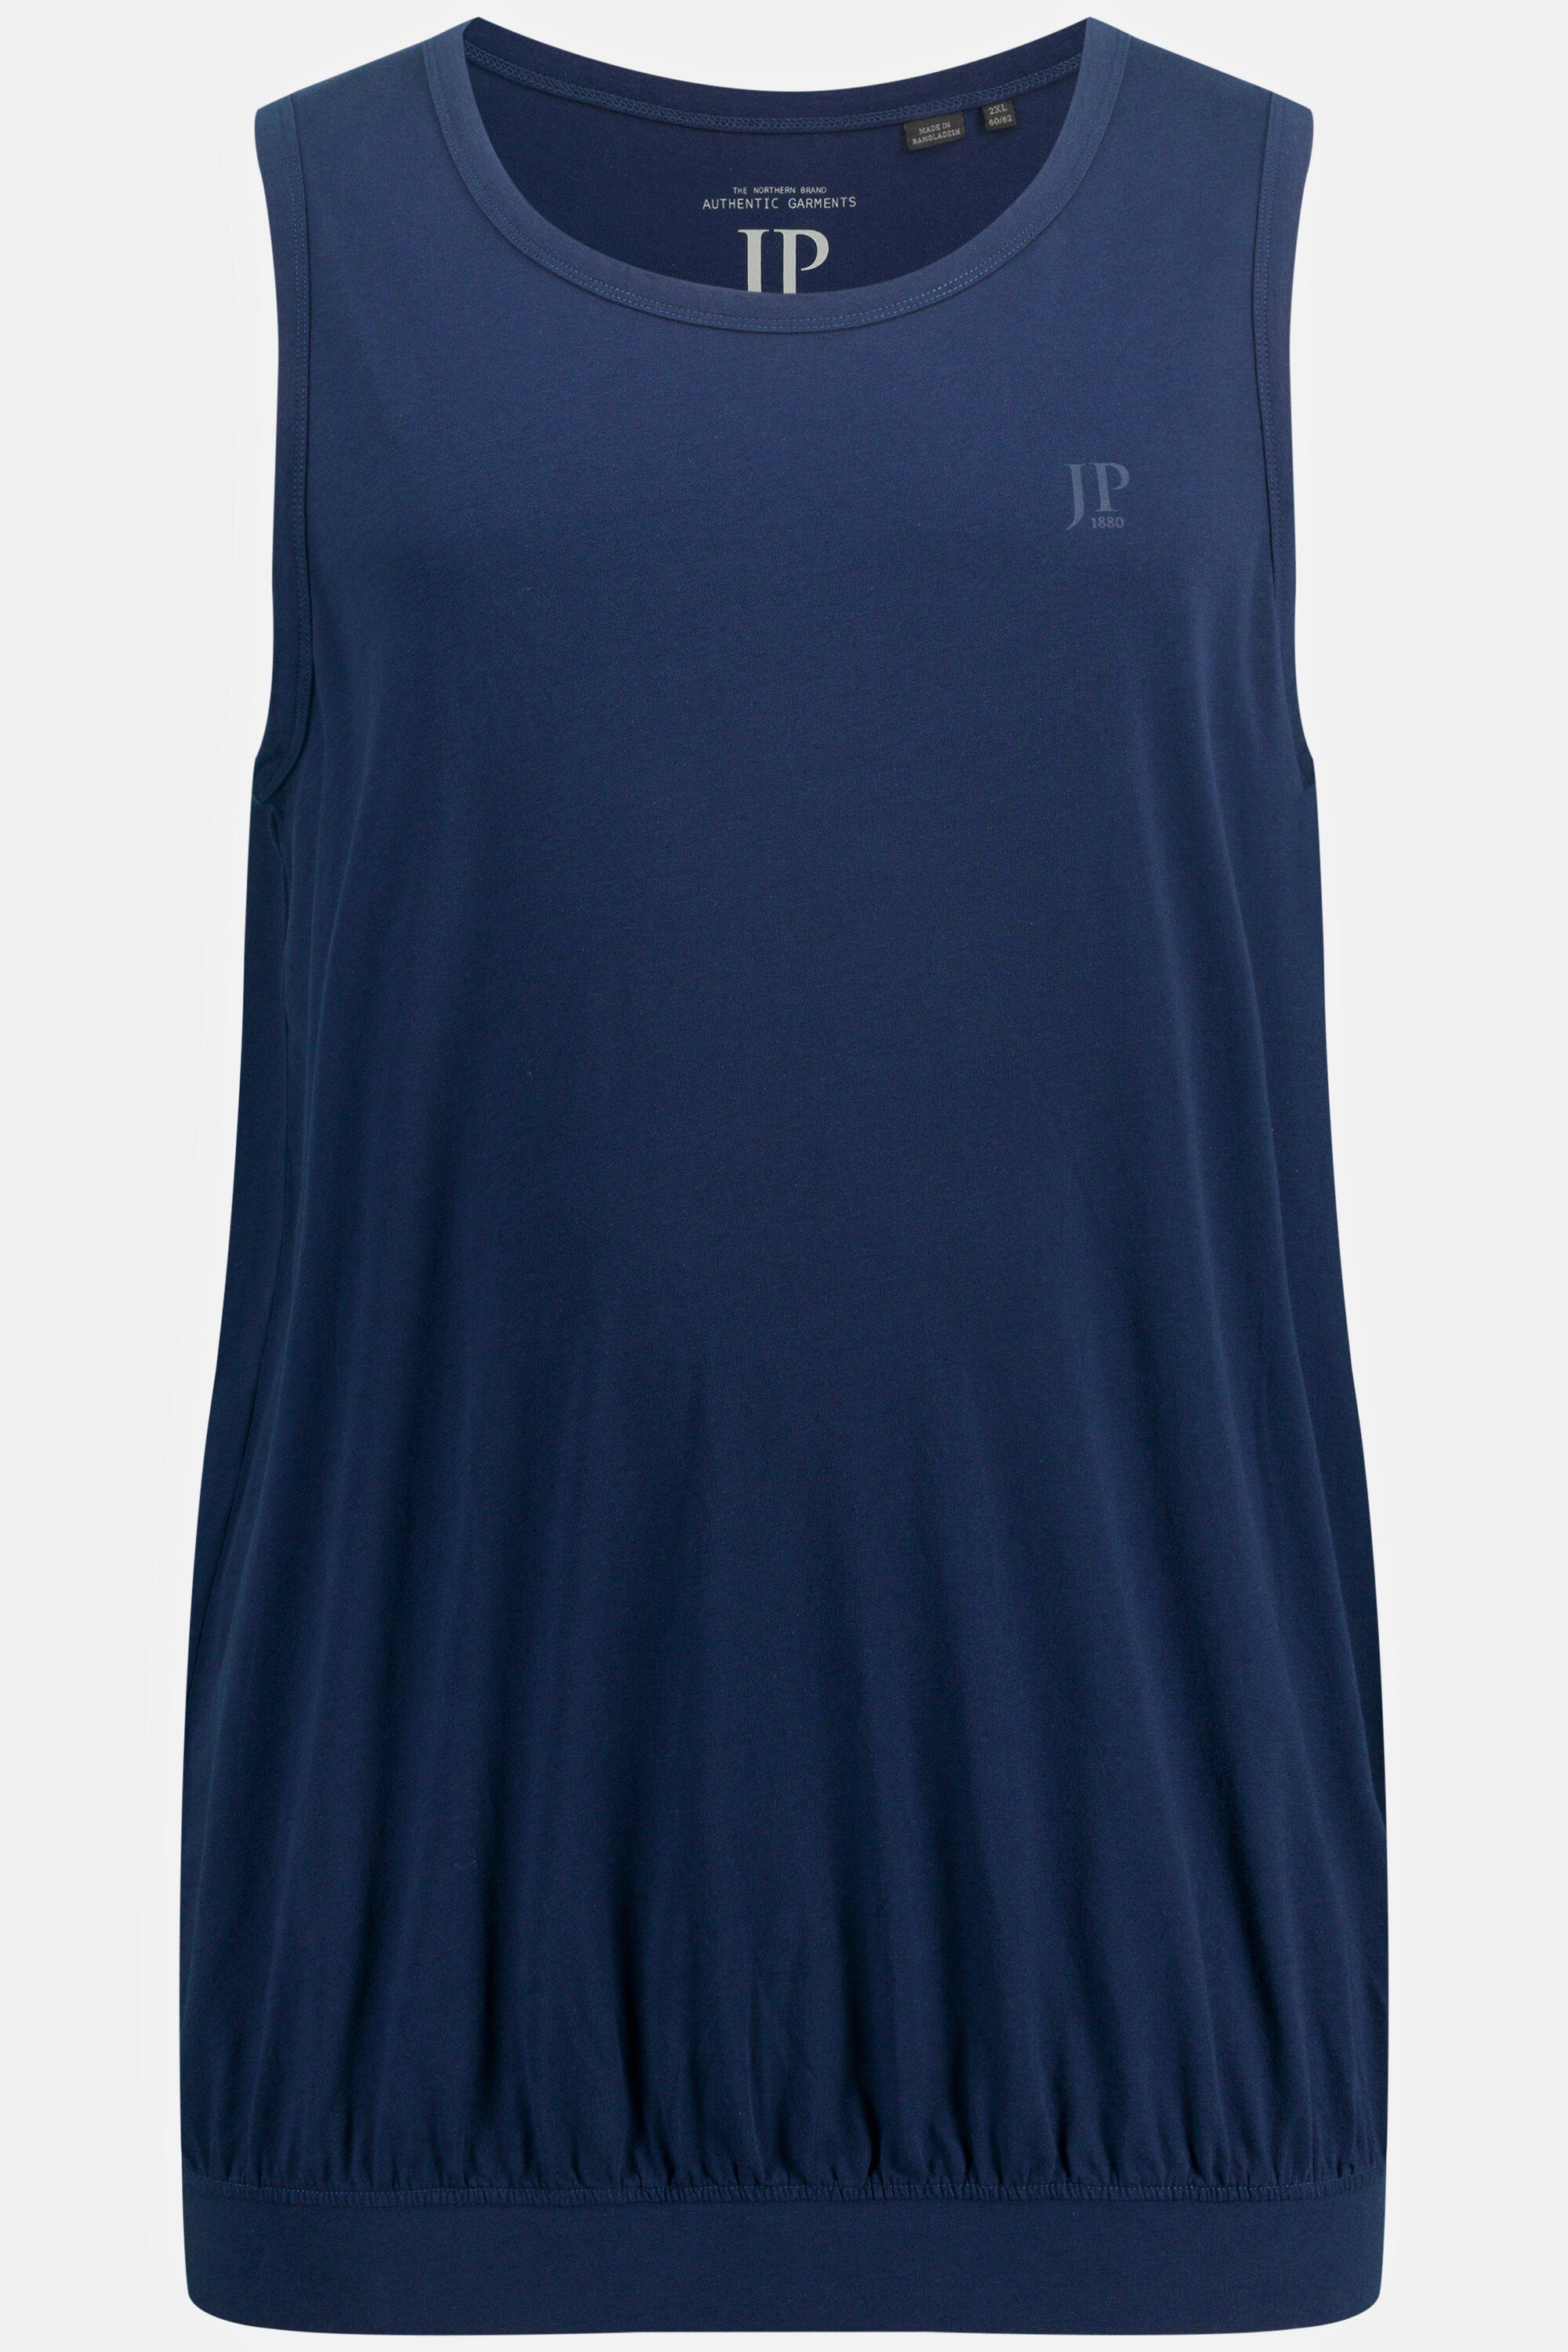 8XL Tanktop Spezialschnitt JP1880 T-Shirt Bauchfit blau bis